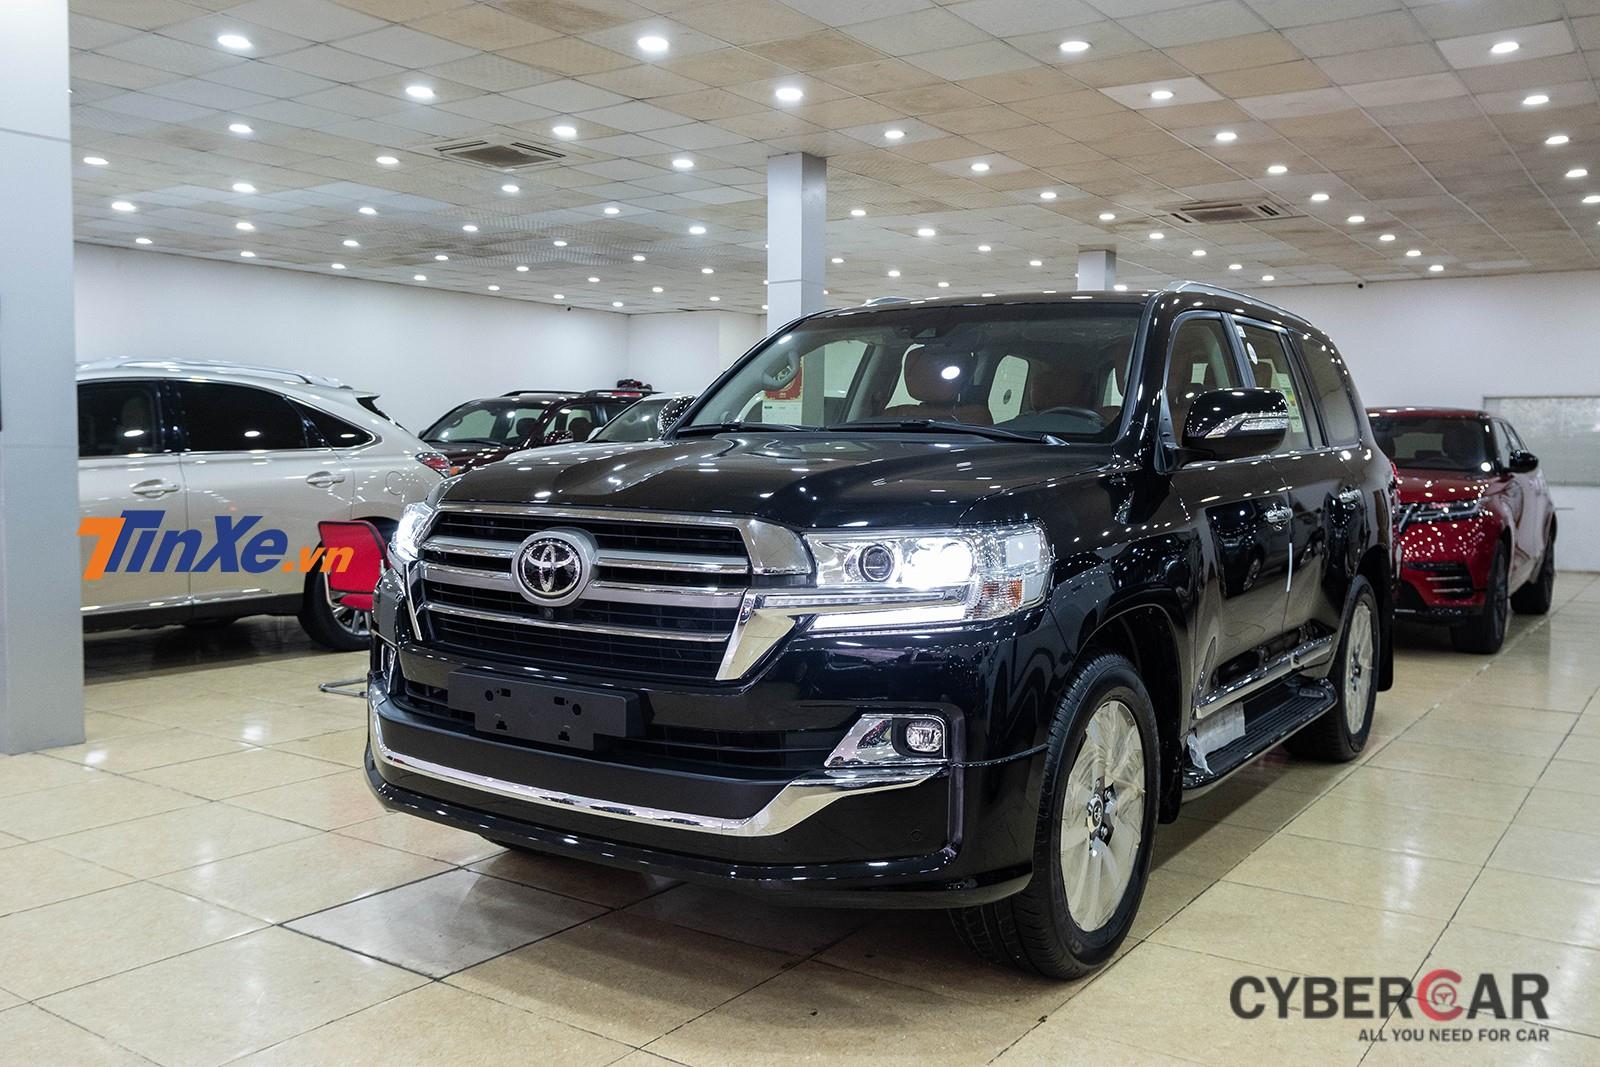 Toyota Land Cruiser VXR 2019 độ MBS từ 7 chỗ xuống còn 4 chỗ mới được một cơ sở nhập khẩu xe tư nhân đưa về Việt Nam